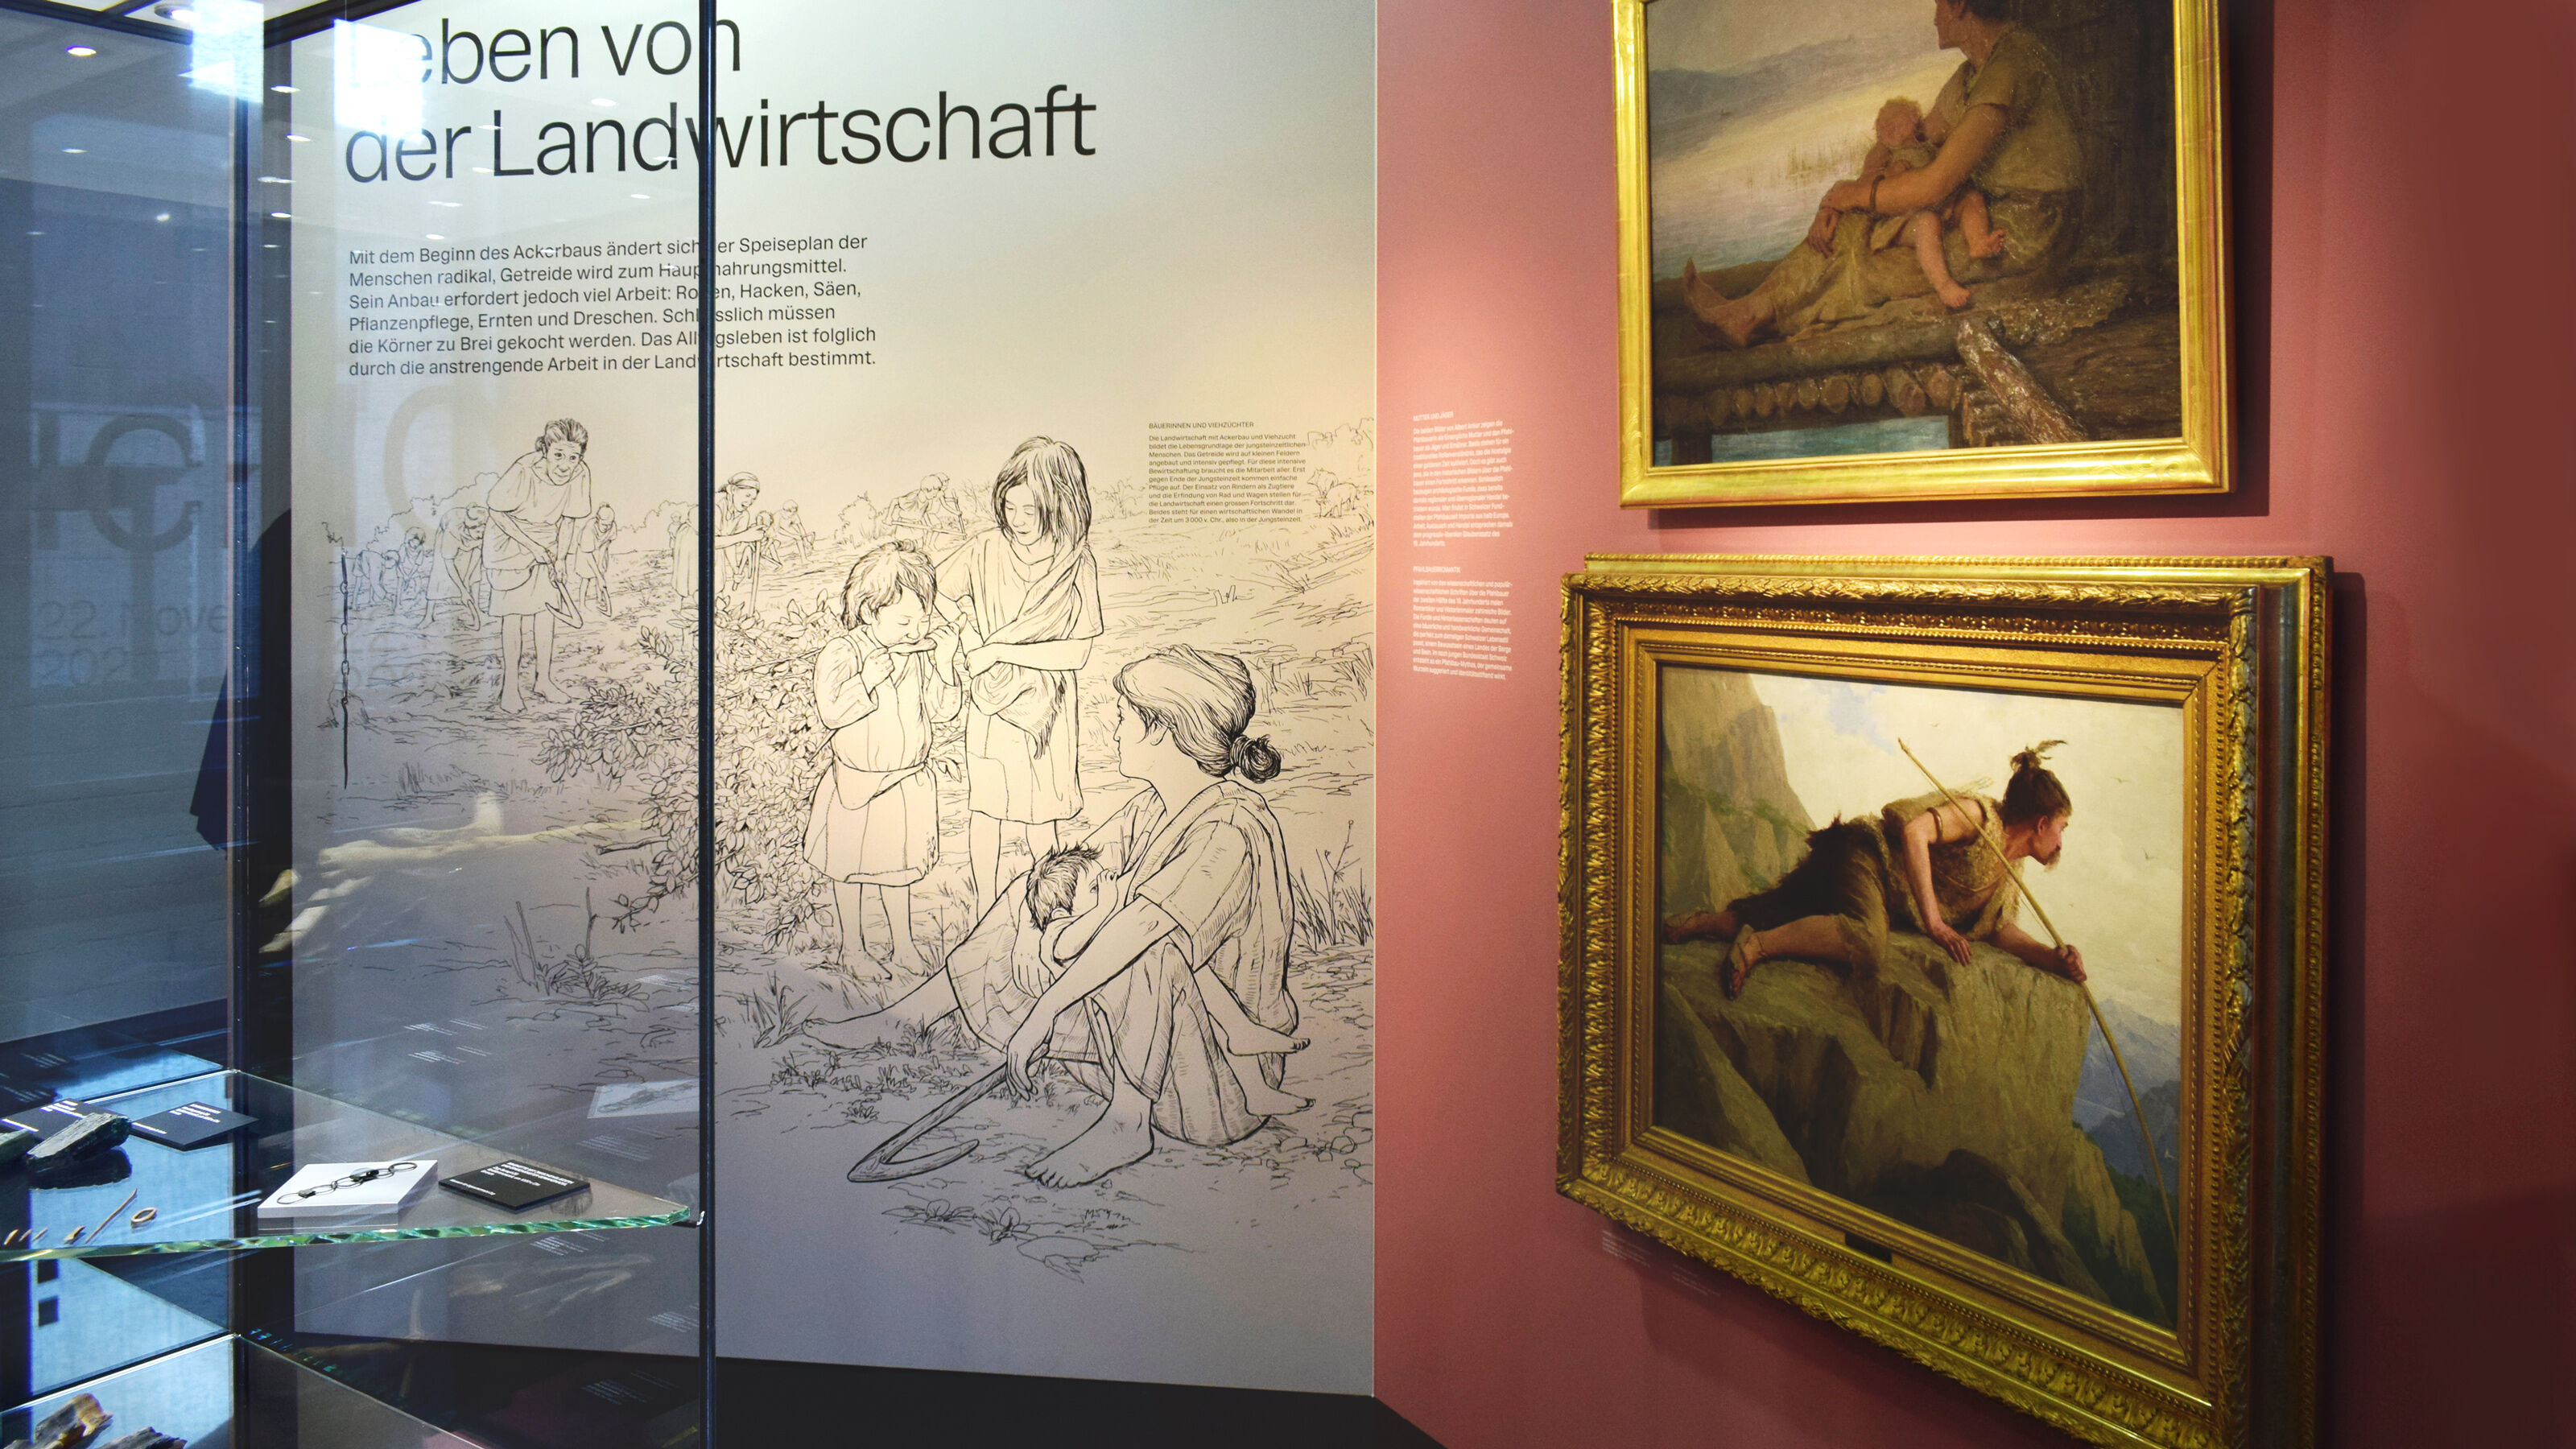 KMUZ-Bildergeschichten_Pfahlbauerin-Ausstellung-_Rekonstruktion_Archaeologie_Lebensbild_bunterhund-Illustration